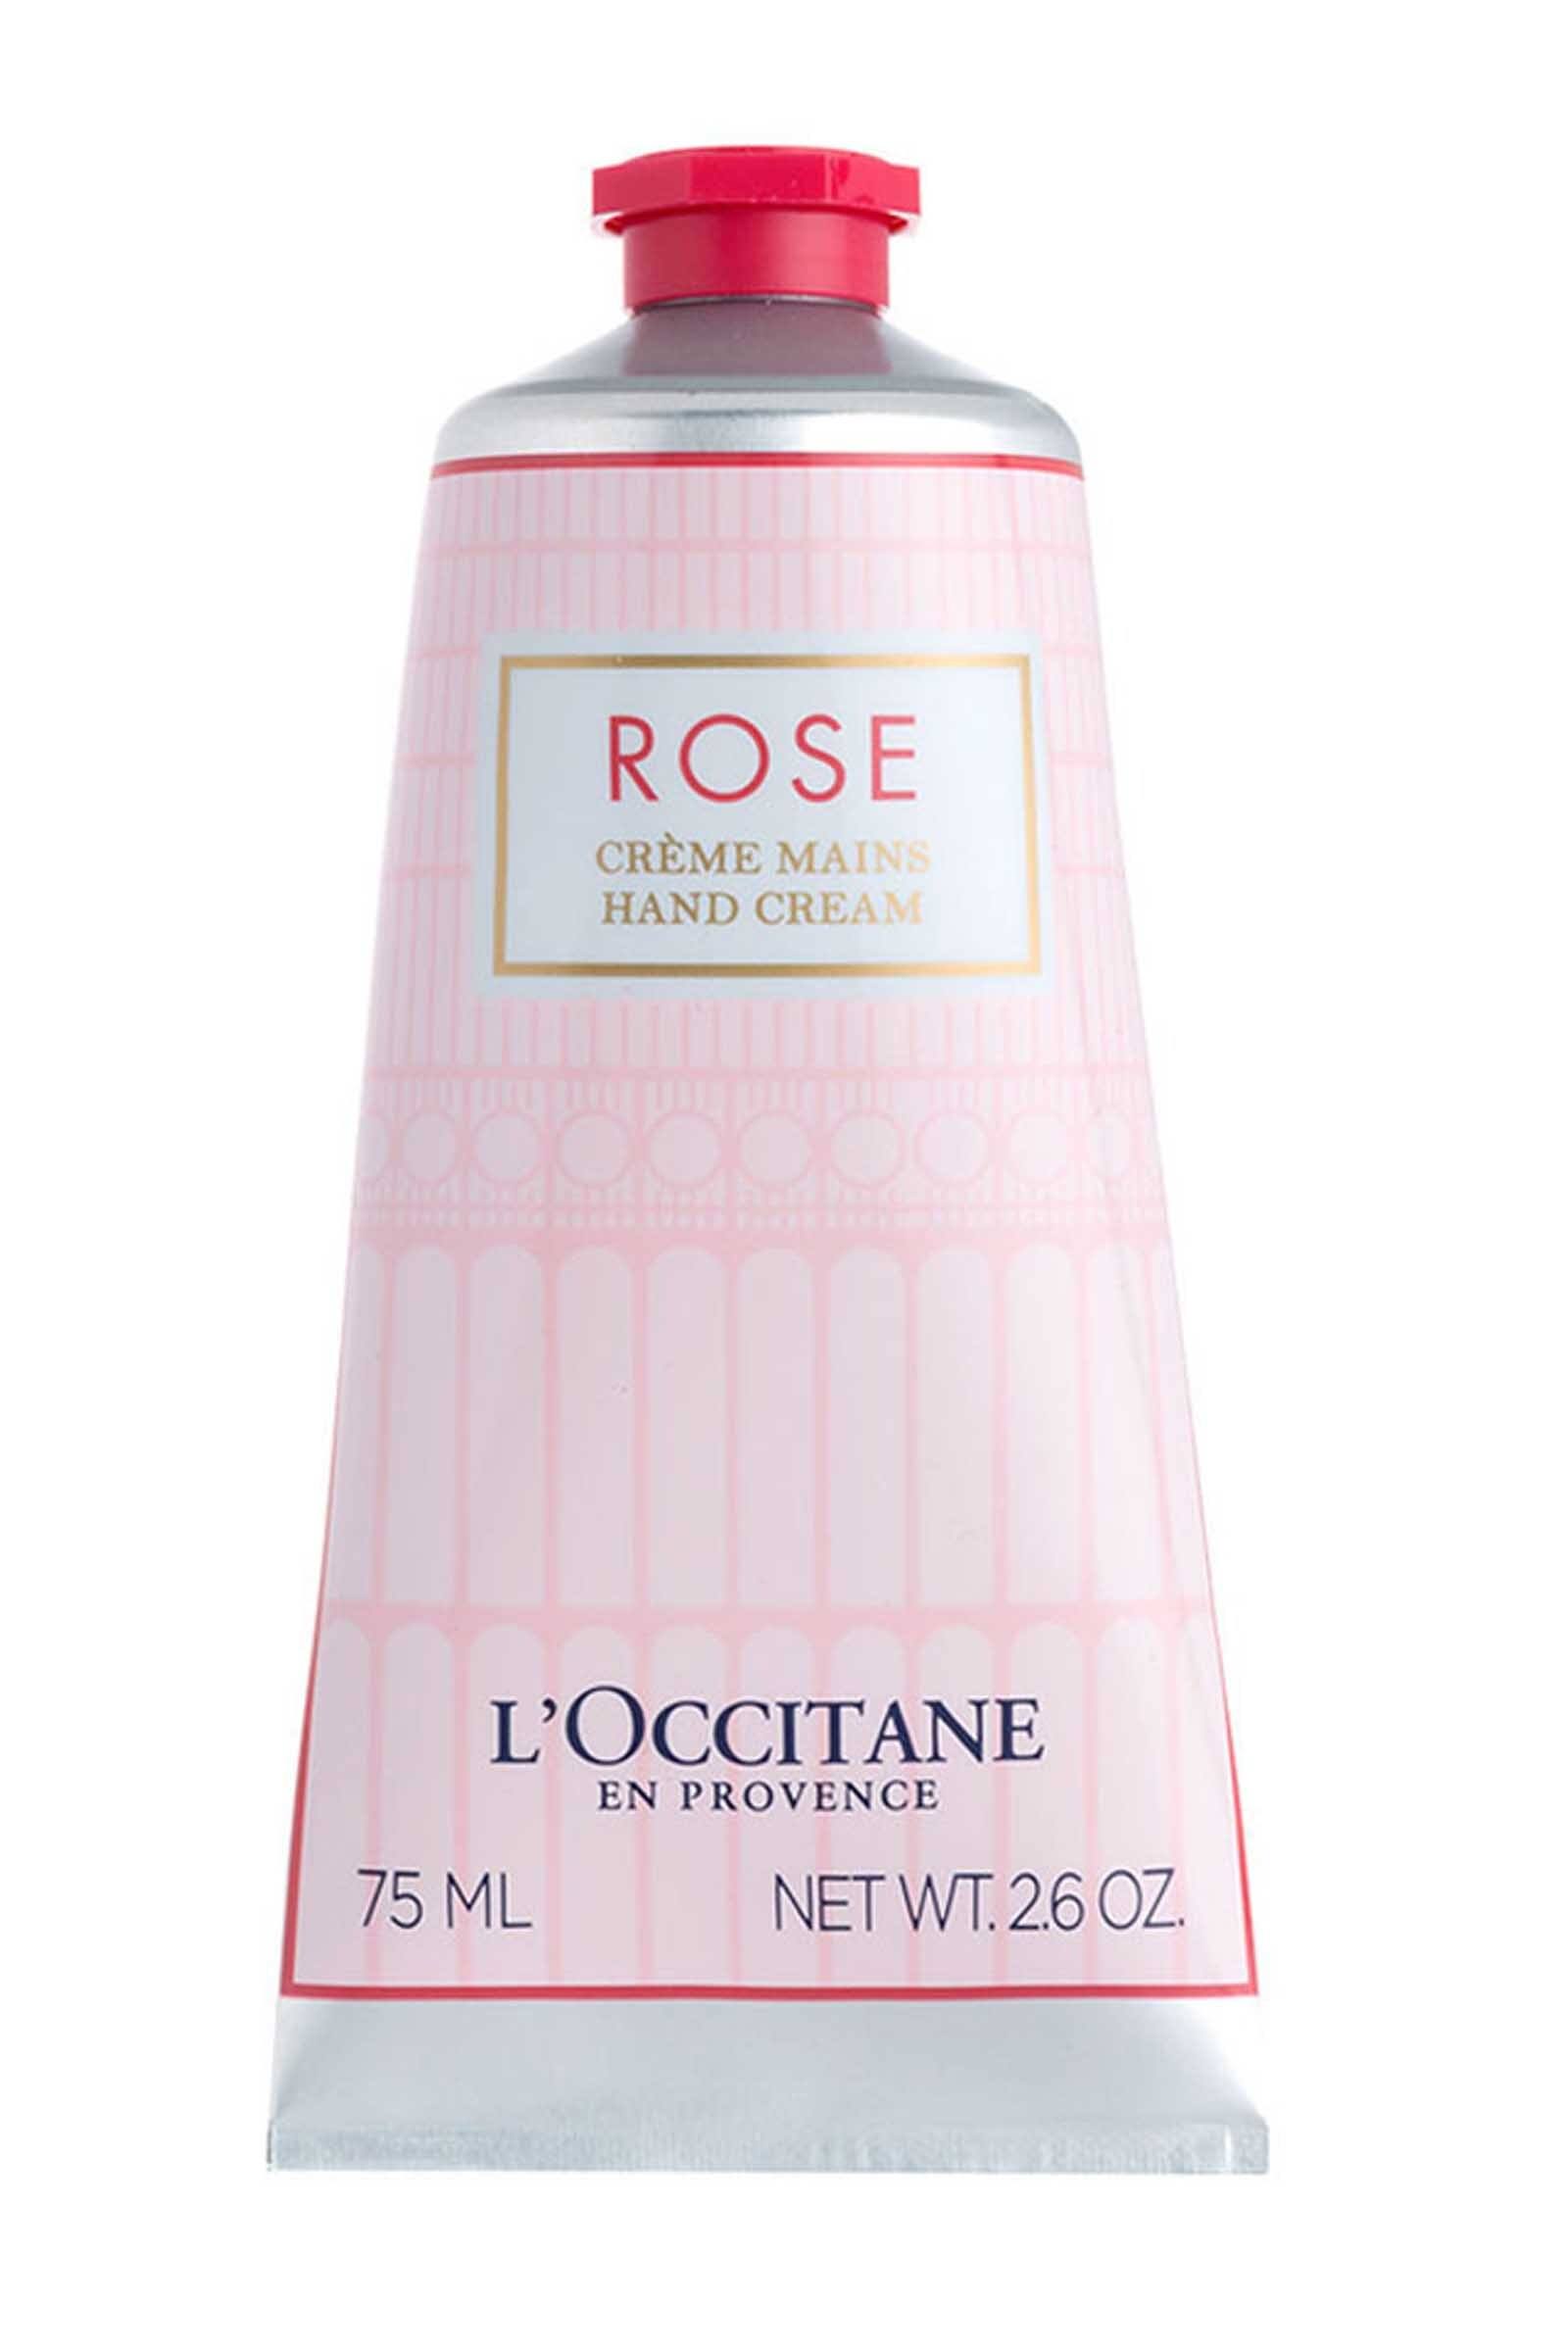 L'Occitane Rose Hand Cream 2.6oz / 75ml